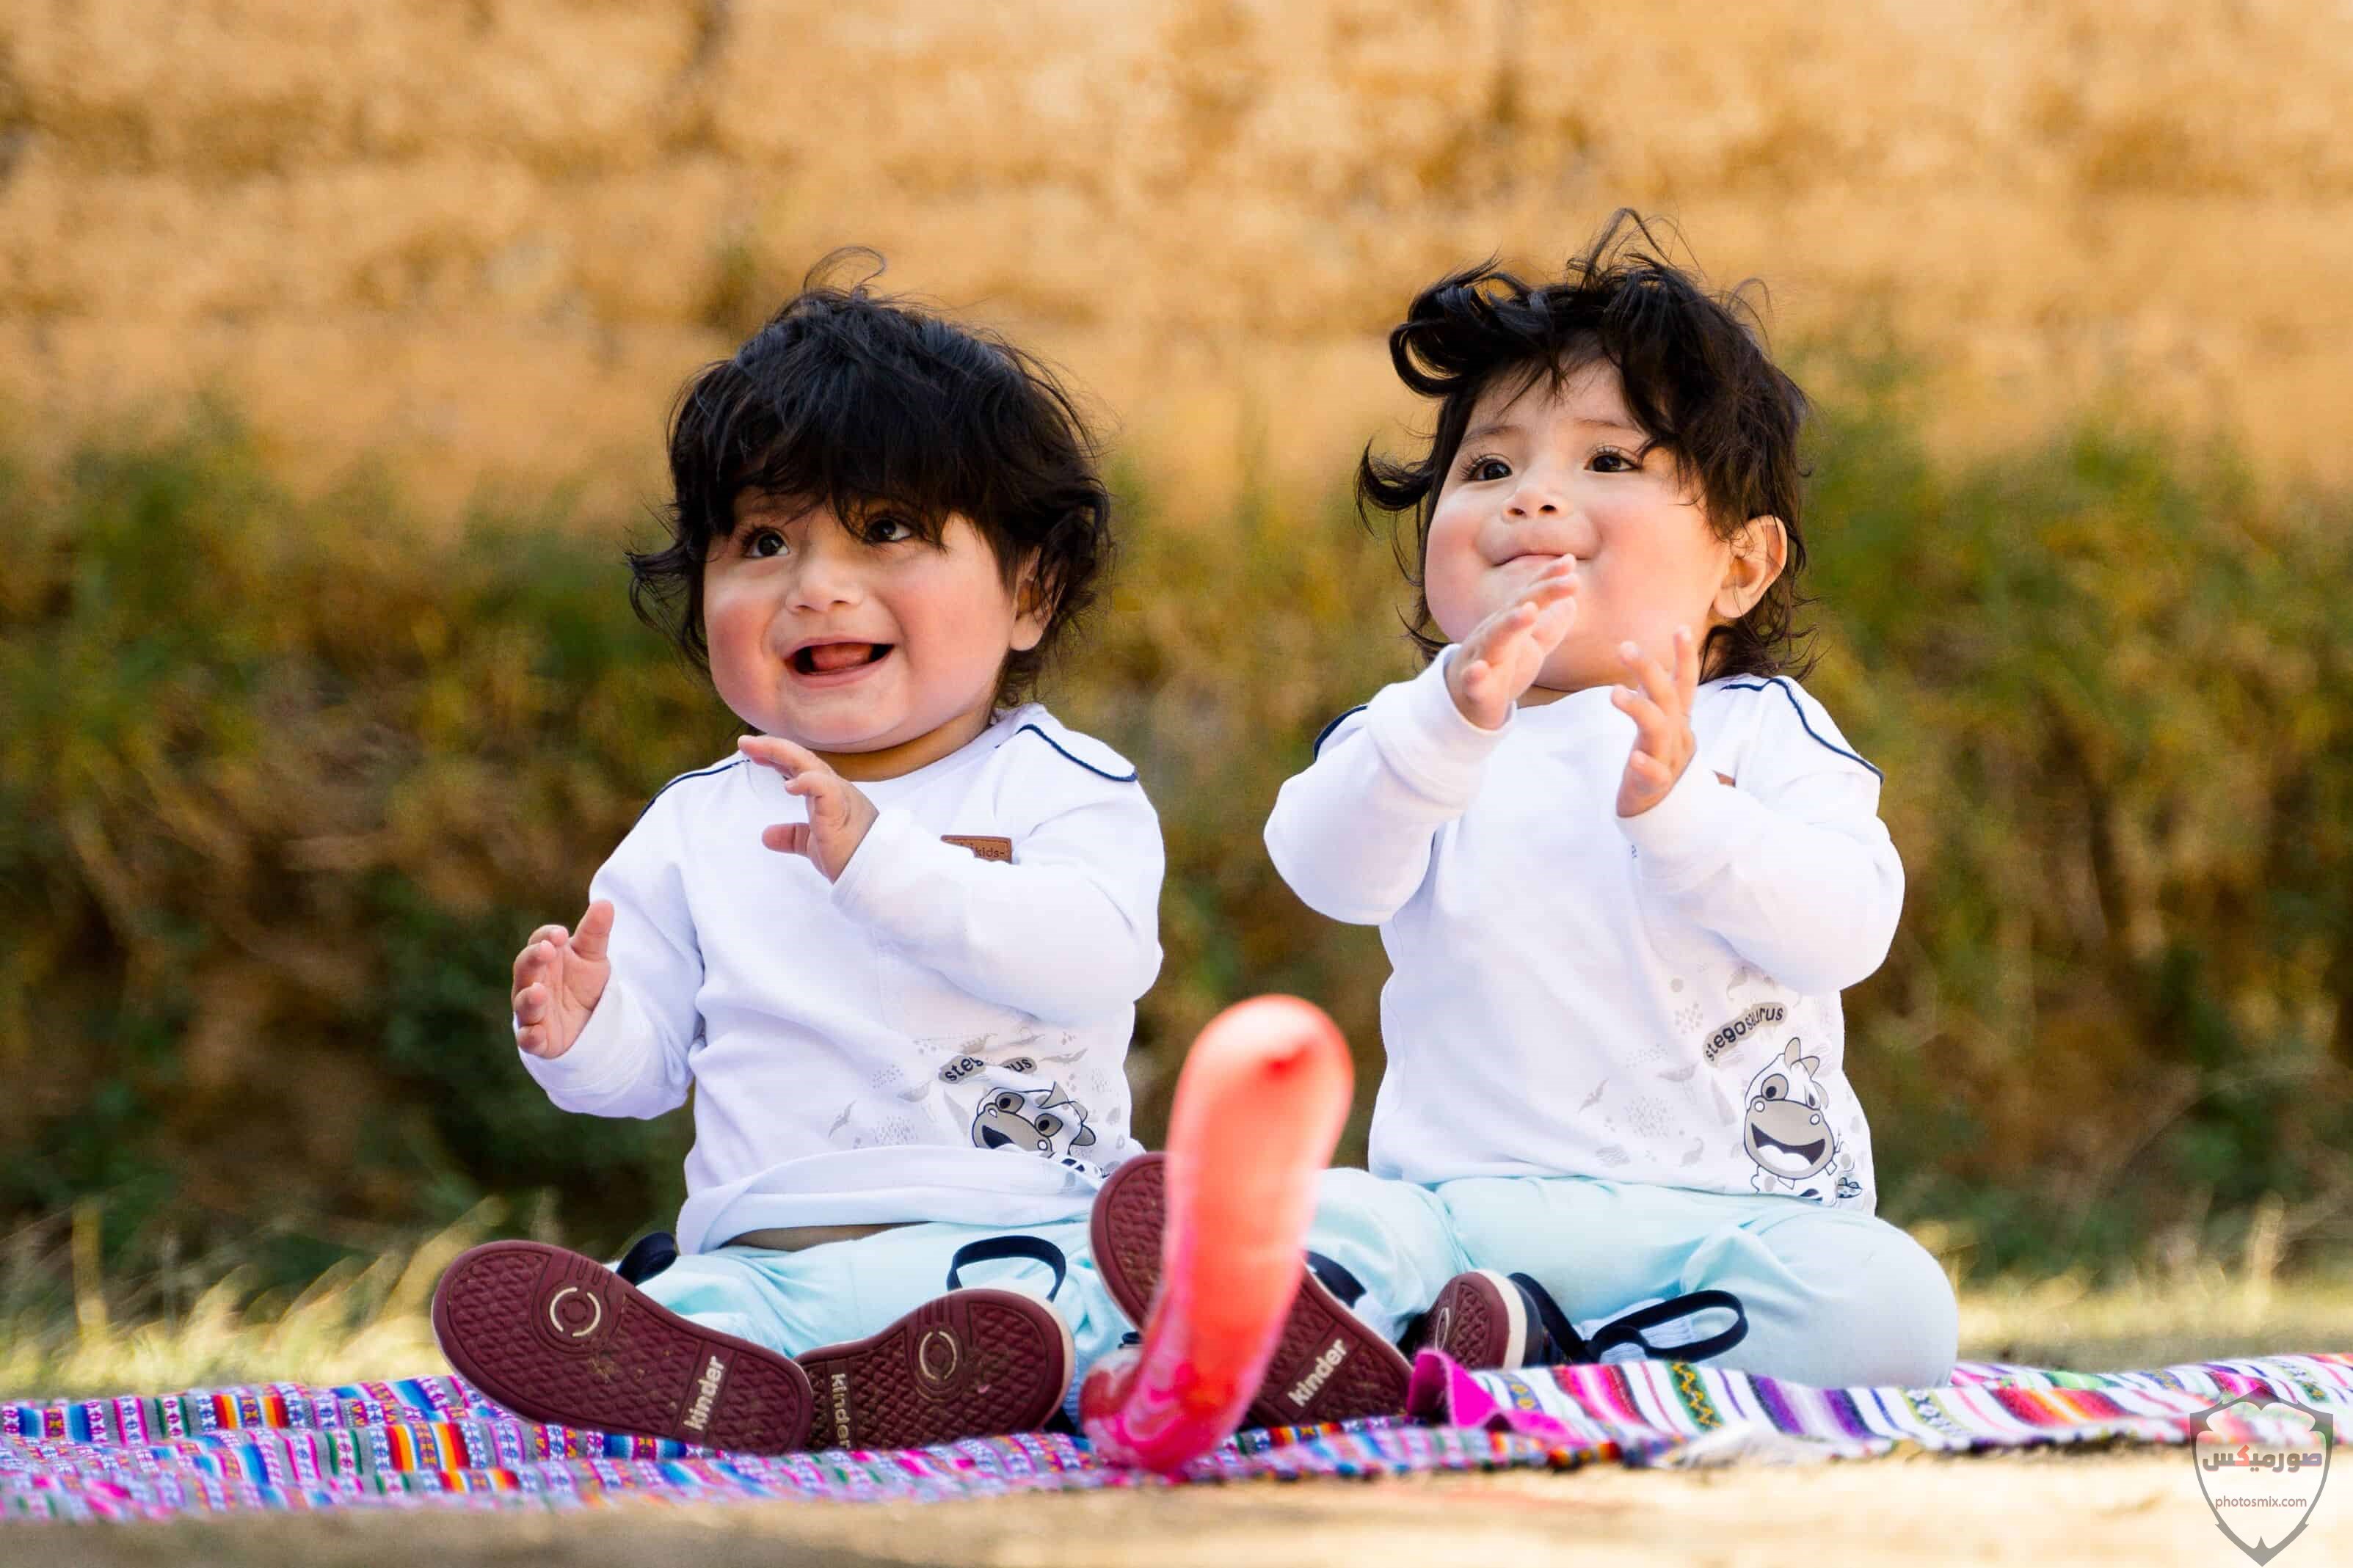 صور اطفال 2021 تحميل اكثر من 100 صور اطفال جميلة صور اطفال روعة 2020 5 1